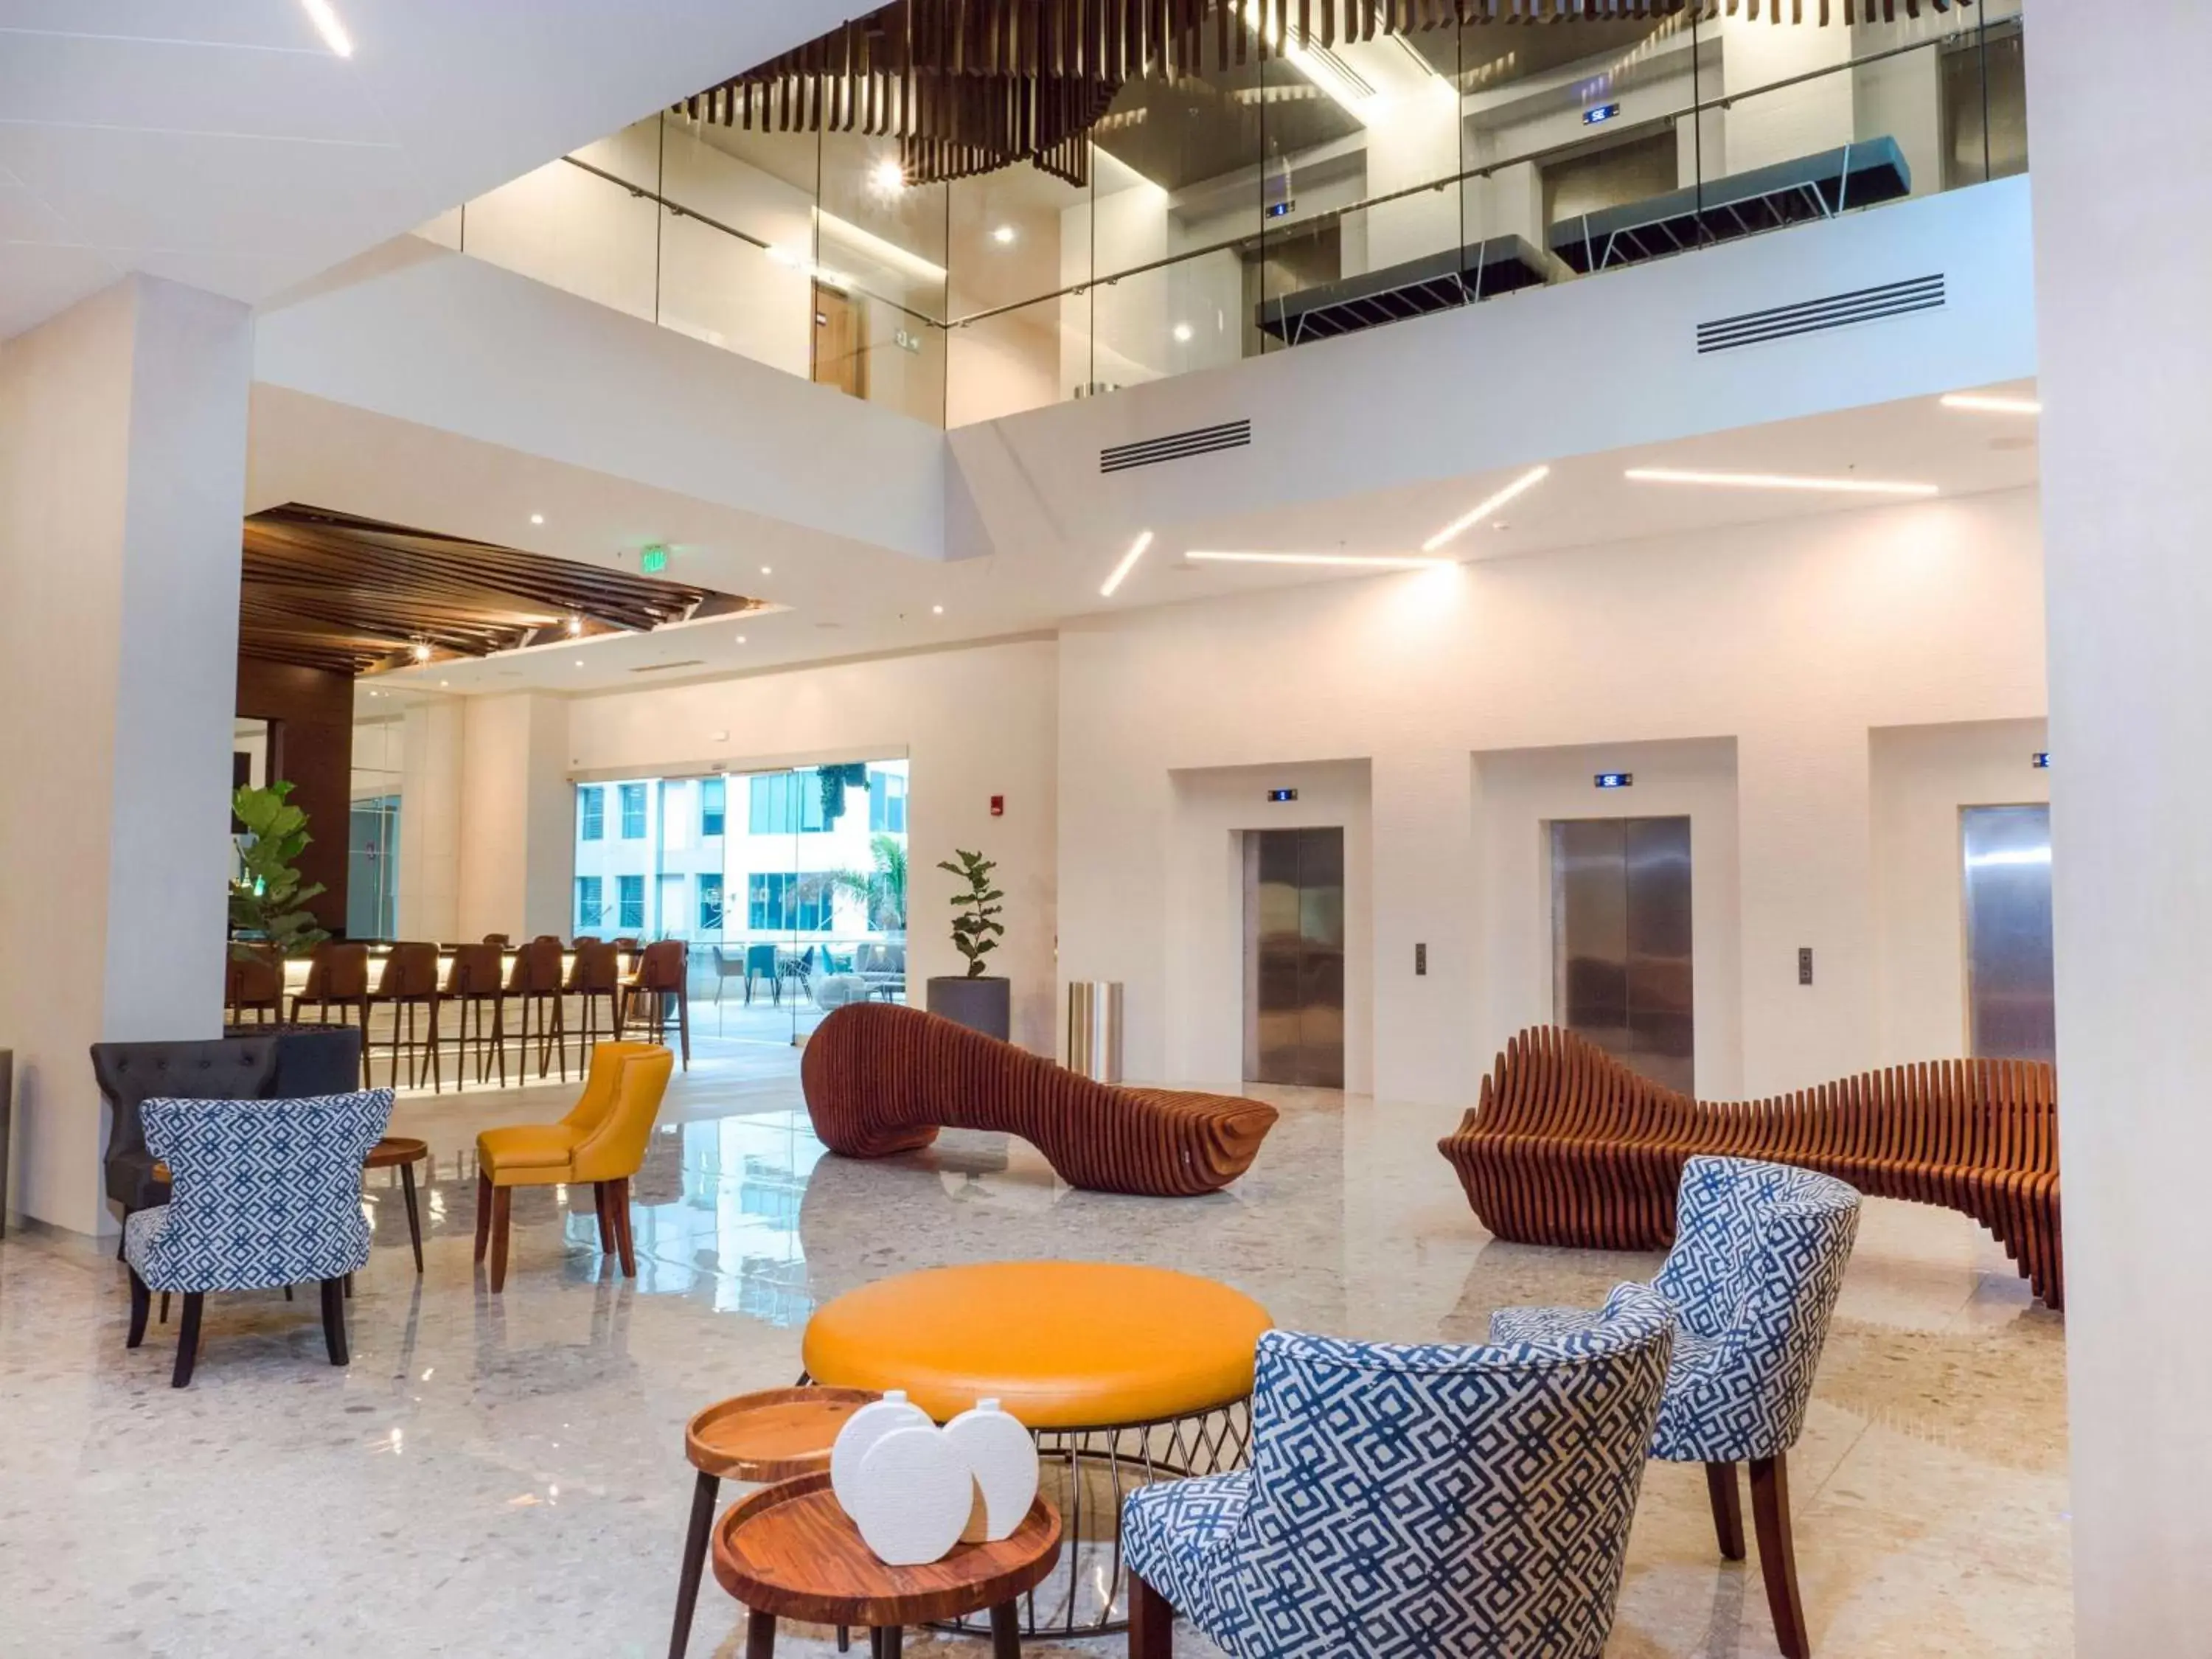 Lobby or reception, Lounge/Bar in Hilton Garden Inn Santa Ana, San Jose